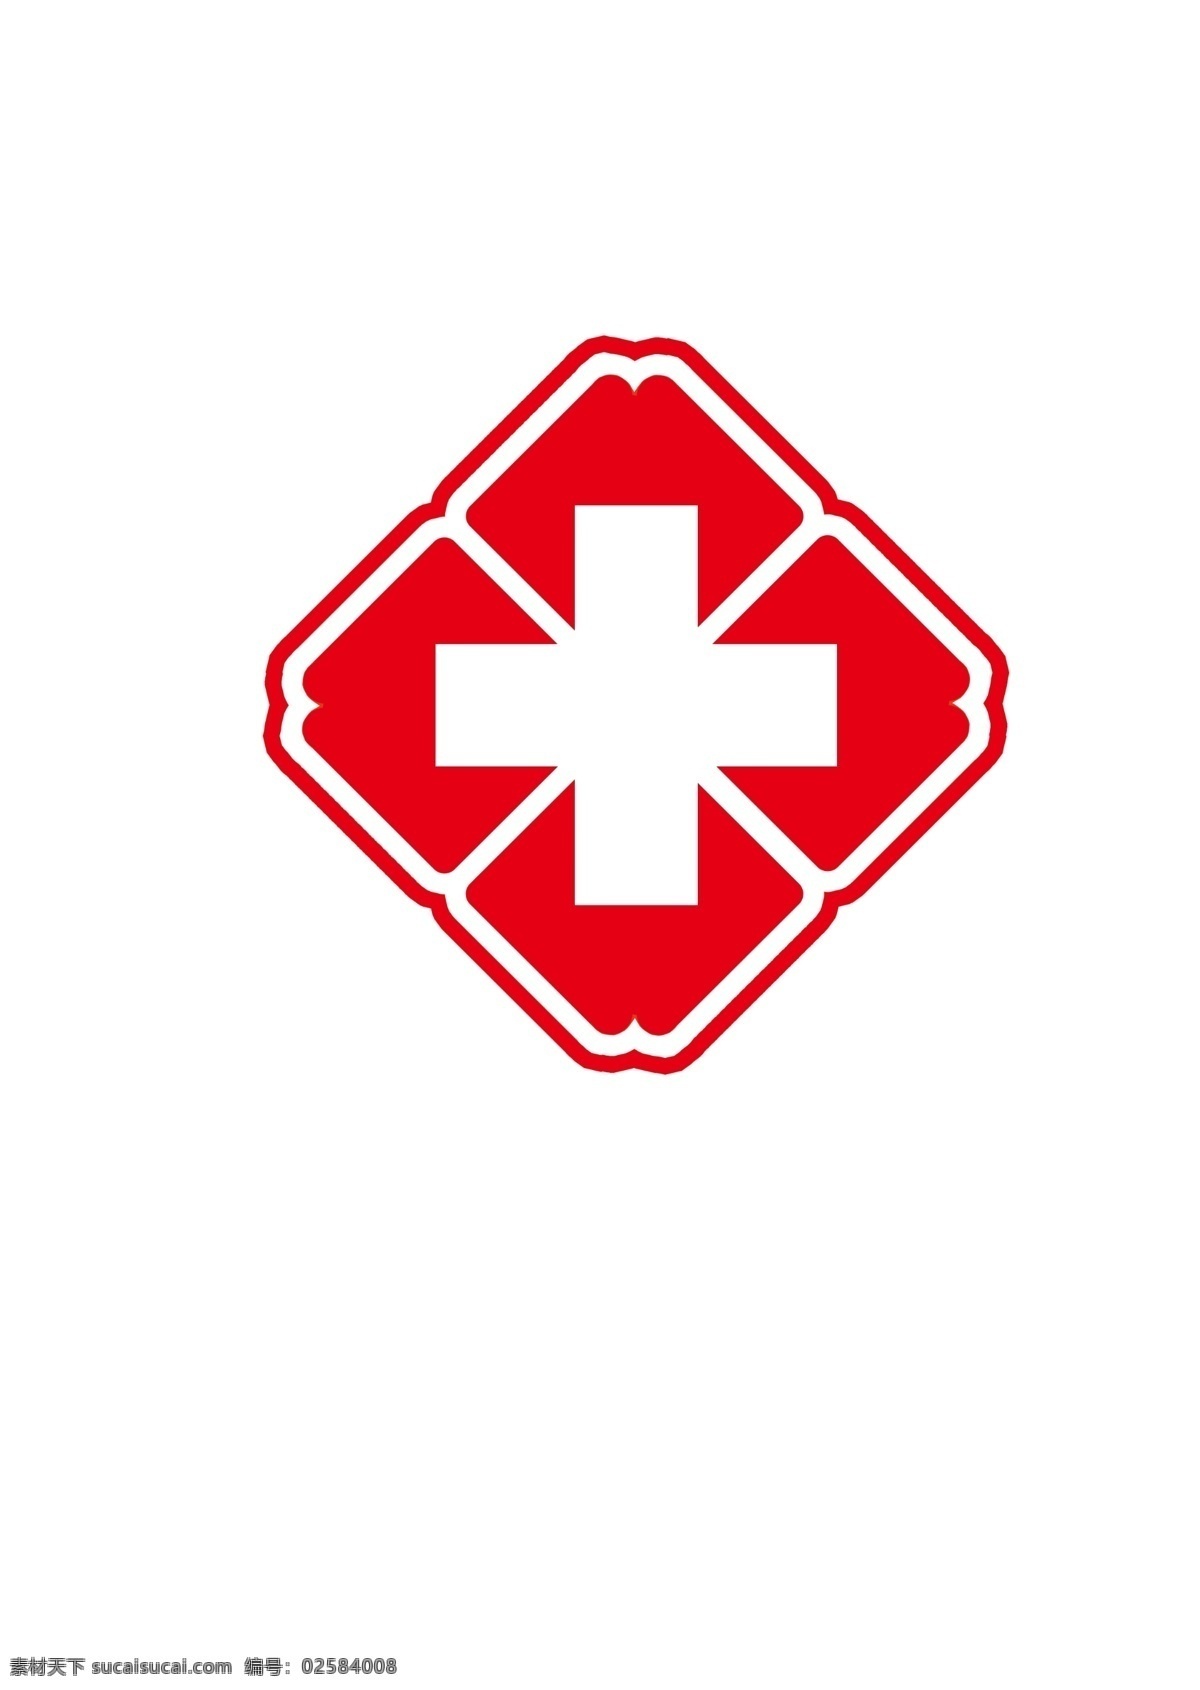 医院标识 红十字 医院标志 医用图标 十字 标志图标 公共标识标志